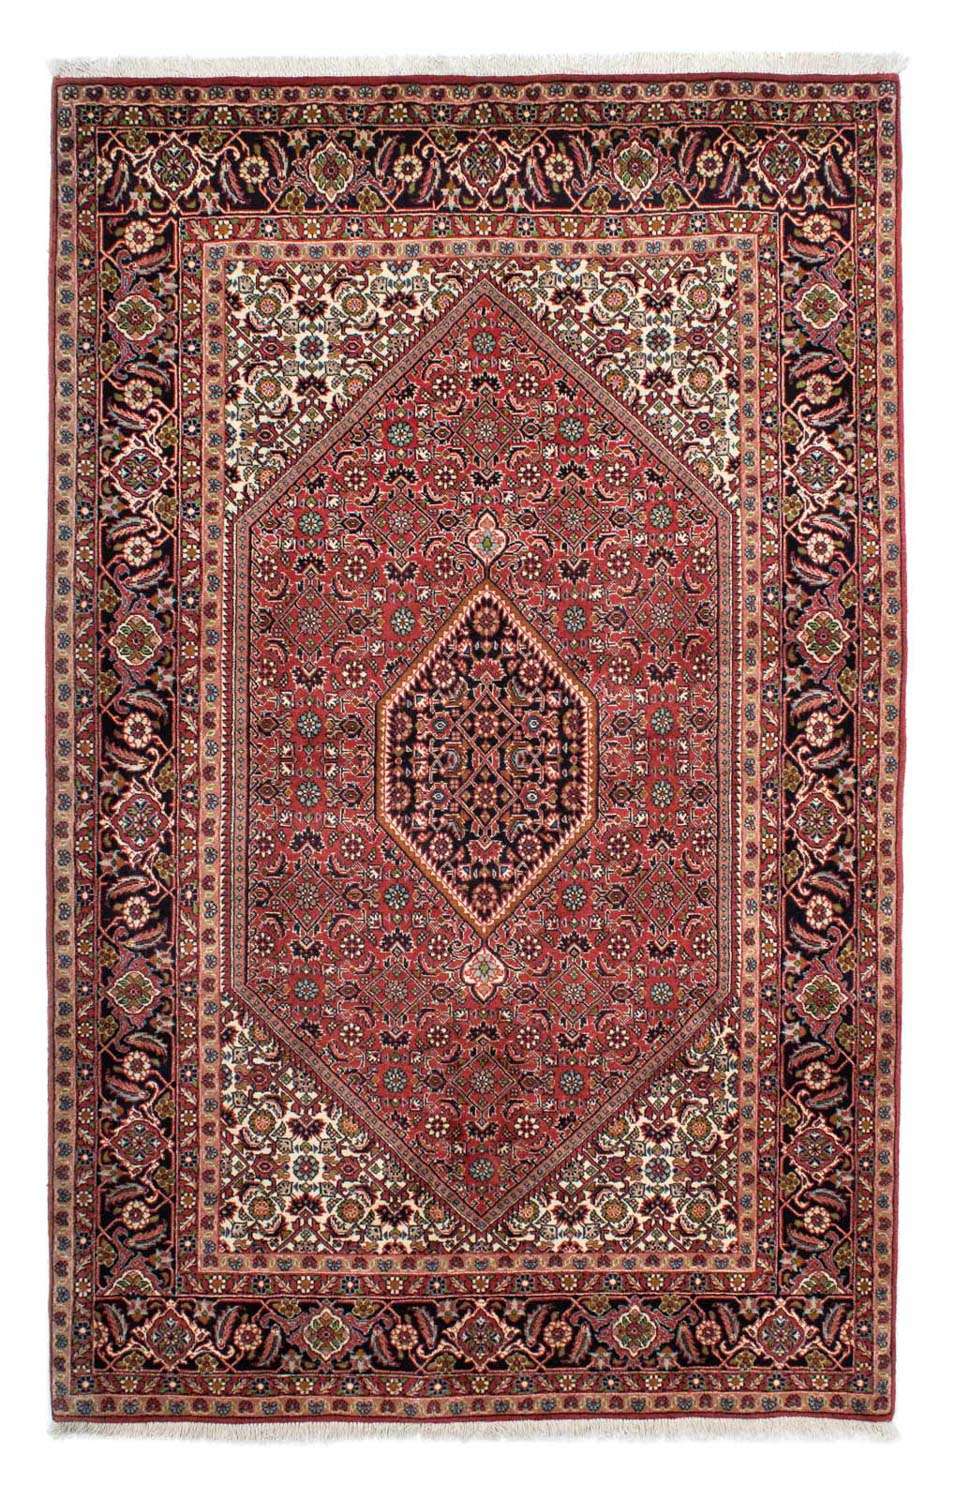 Persisk matta - Bijar - 224 x 141 cm - ljusröd